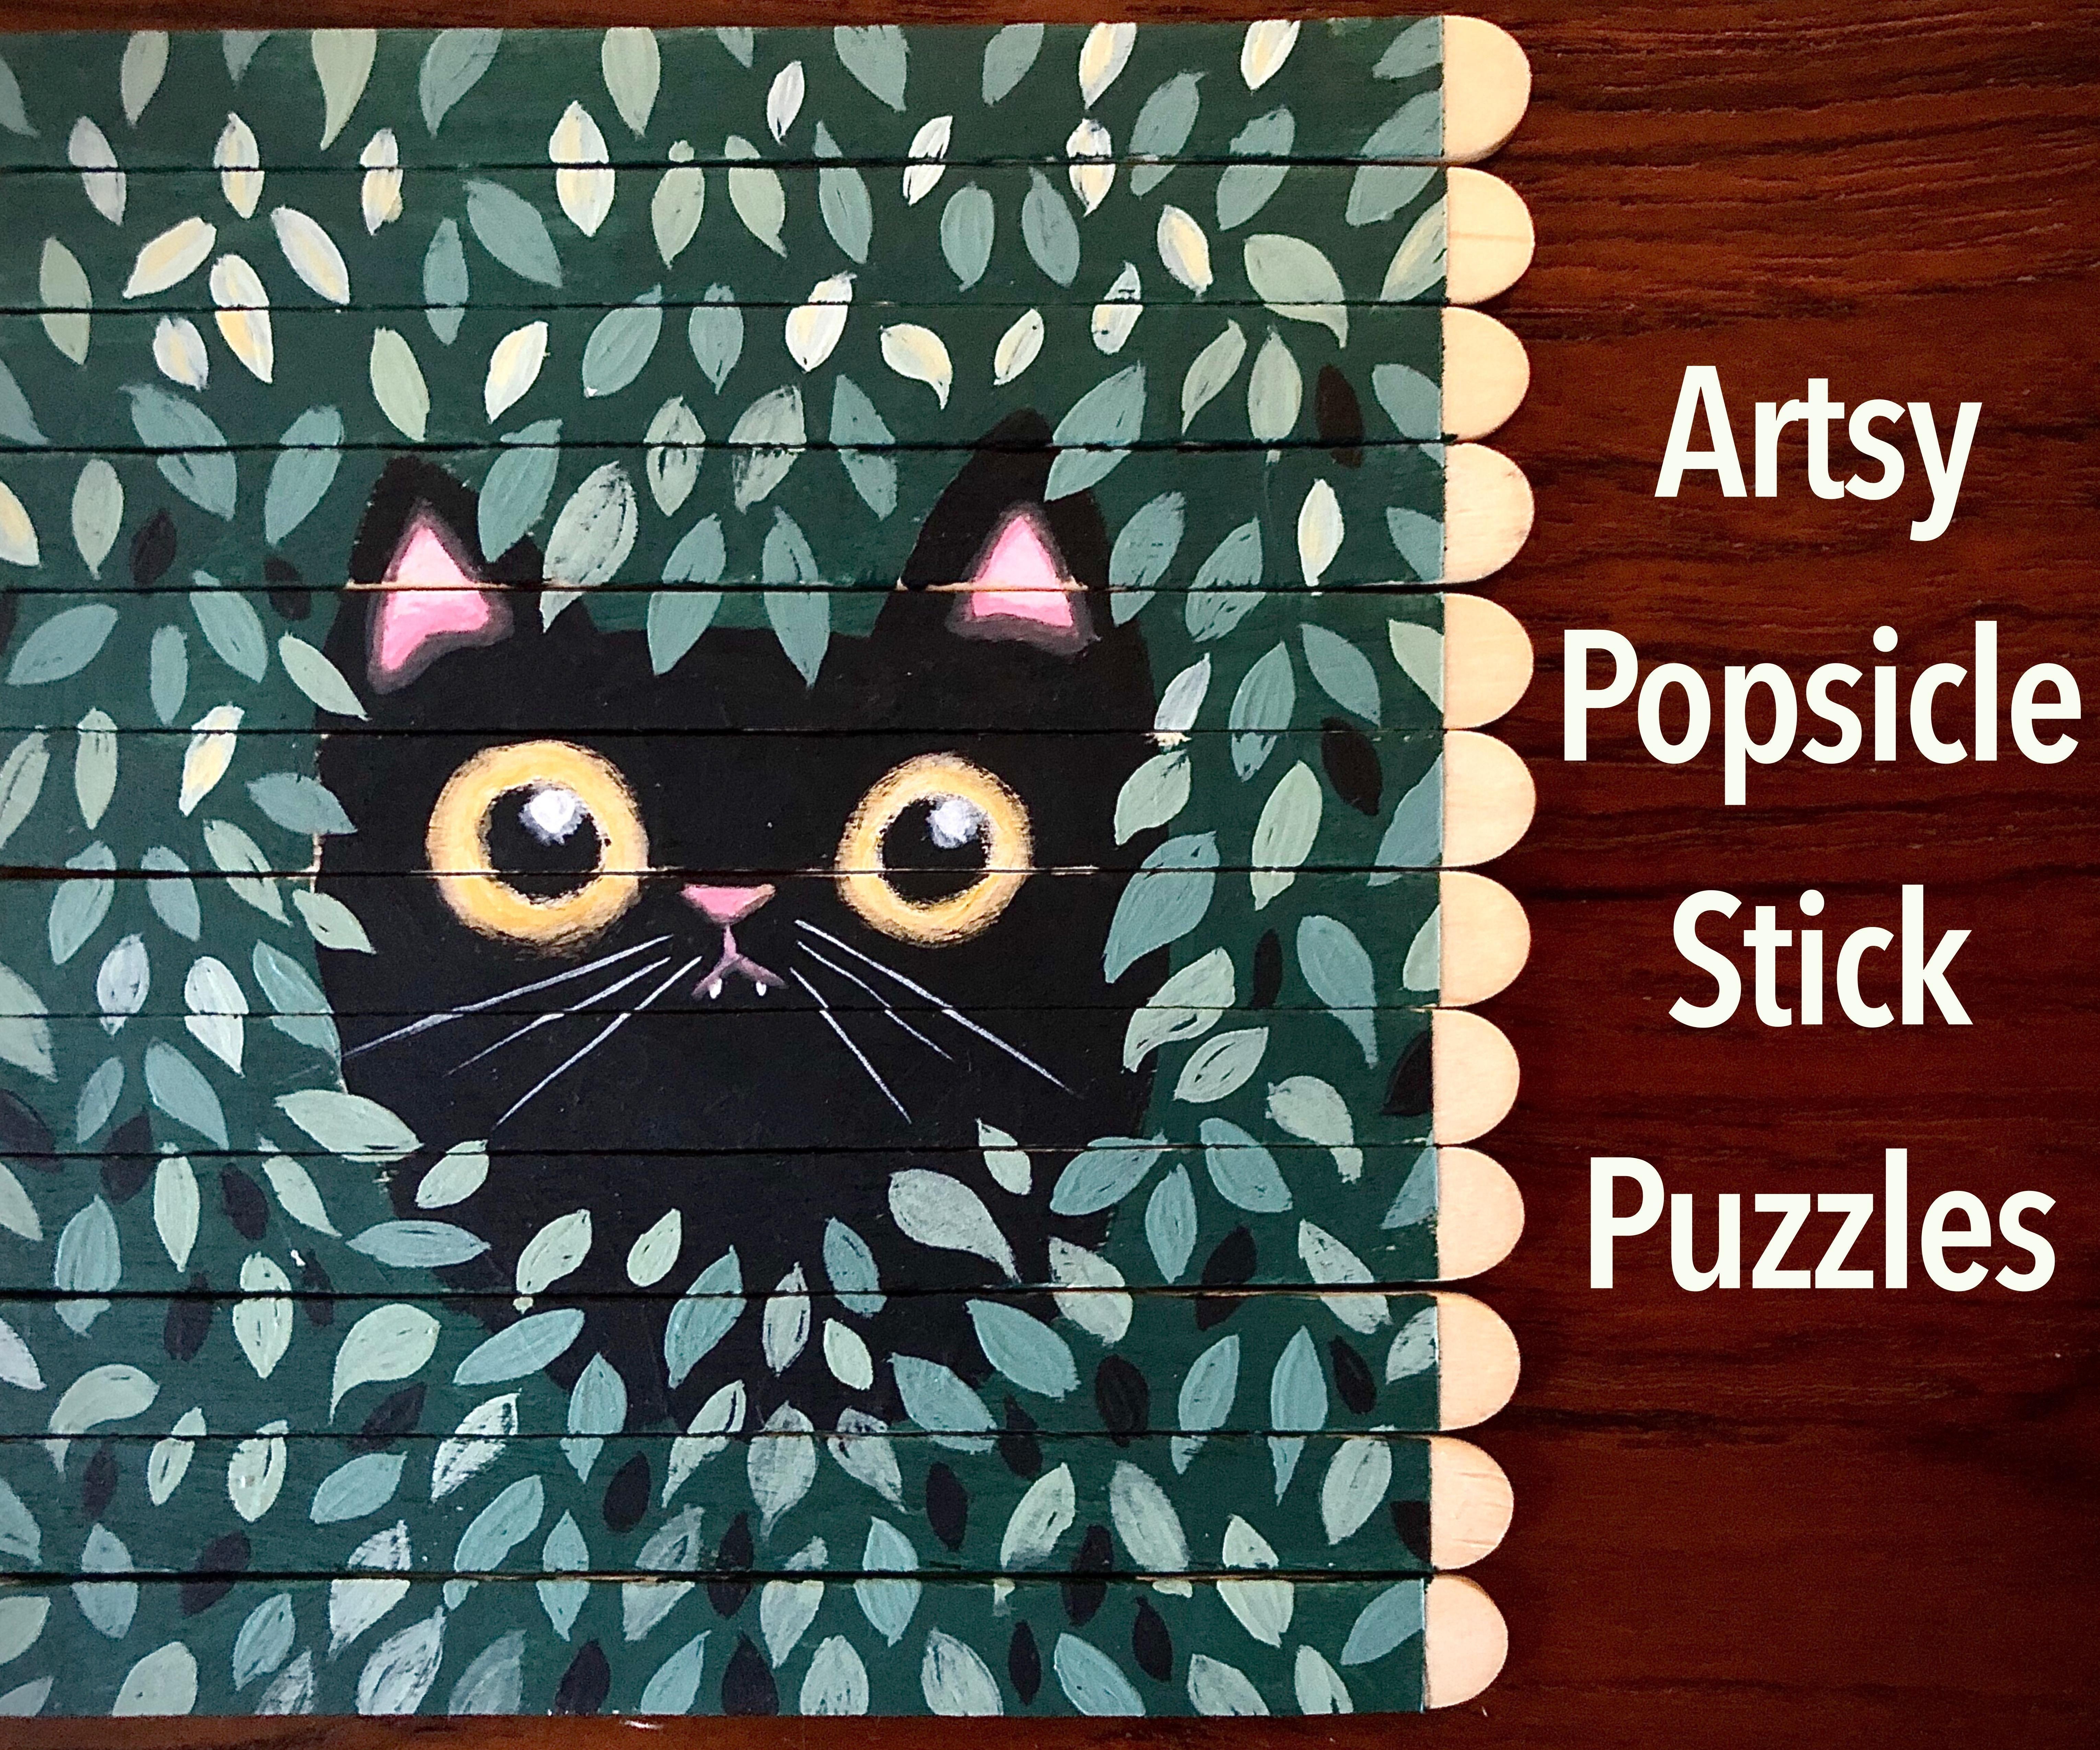 Artist's Popsicle Stick Puzzle